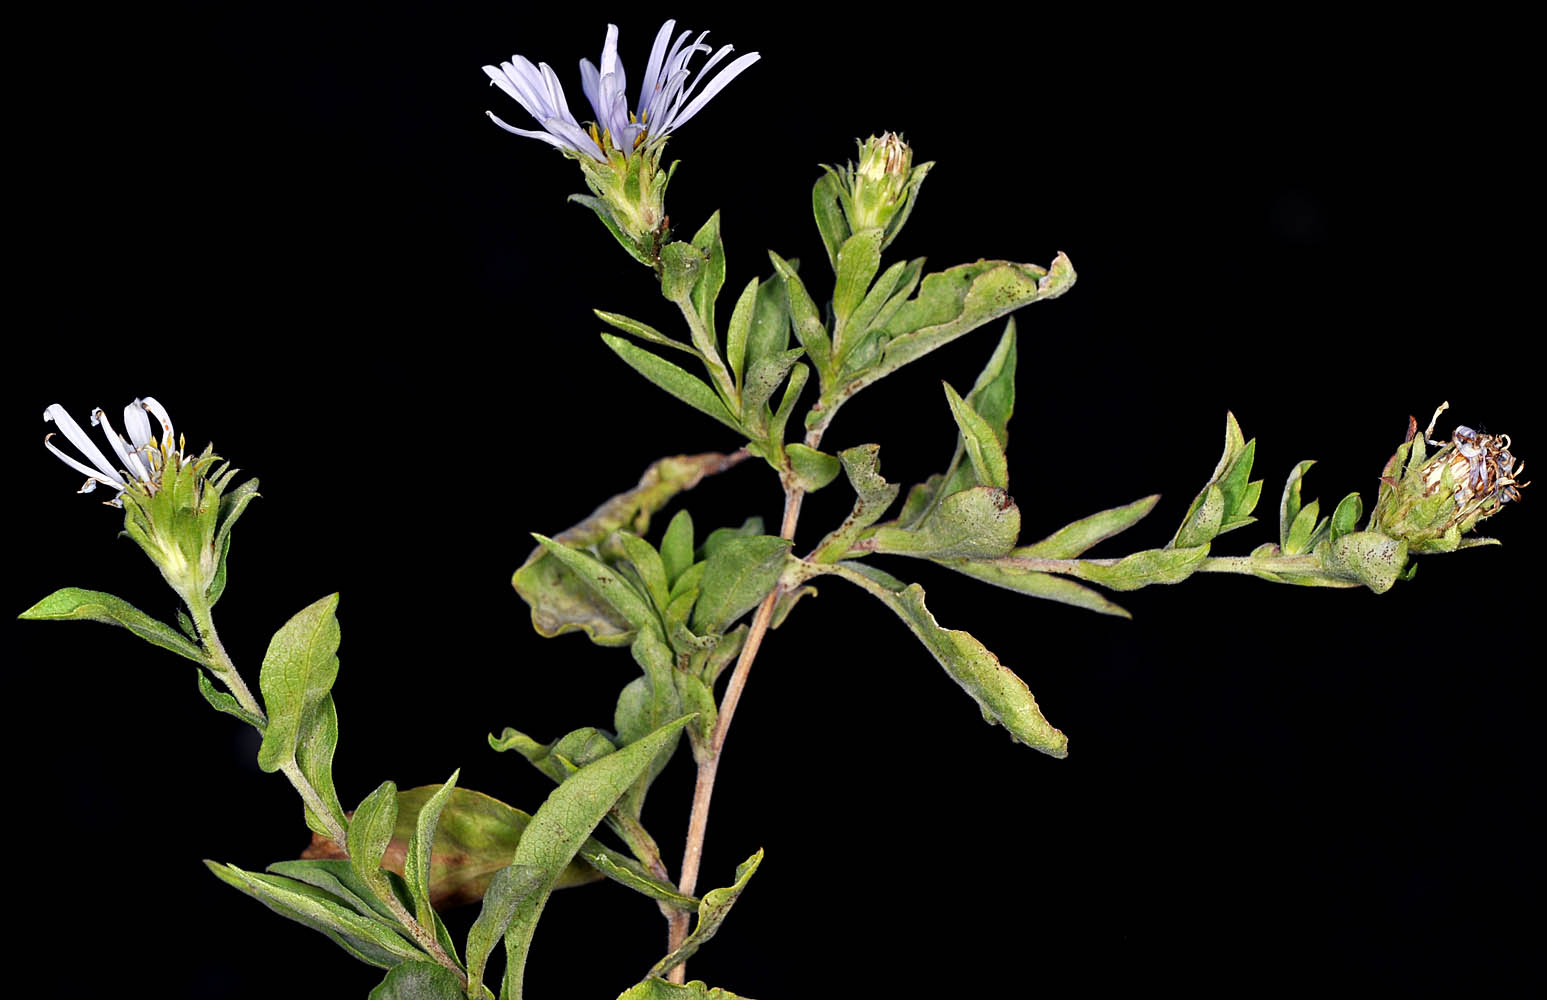 Flora of Eastern Washington Image: Symphyotrichum cusickii